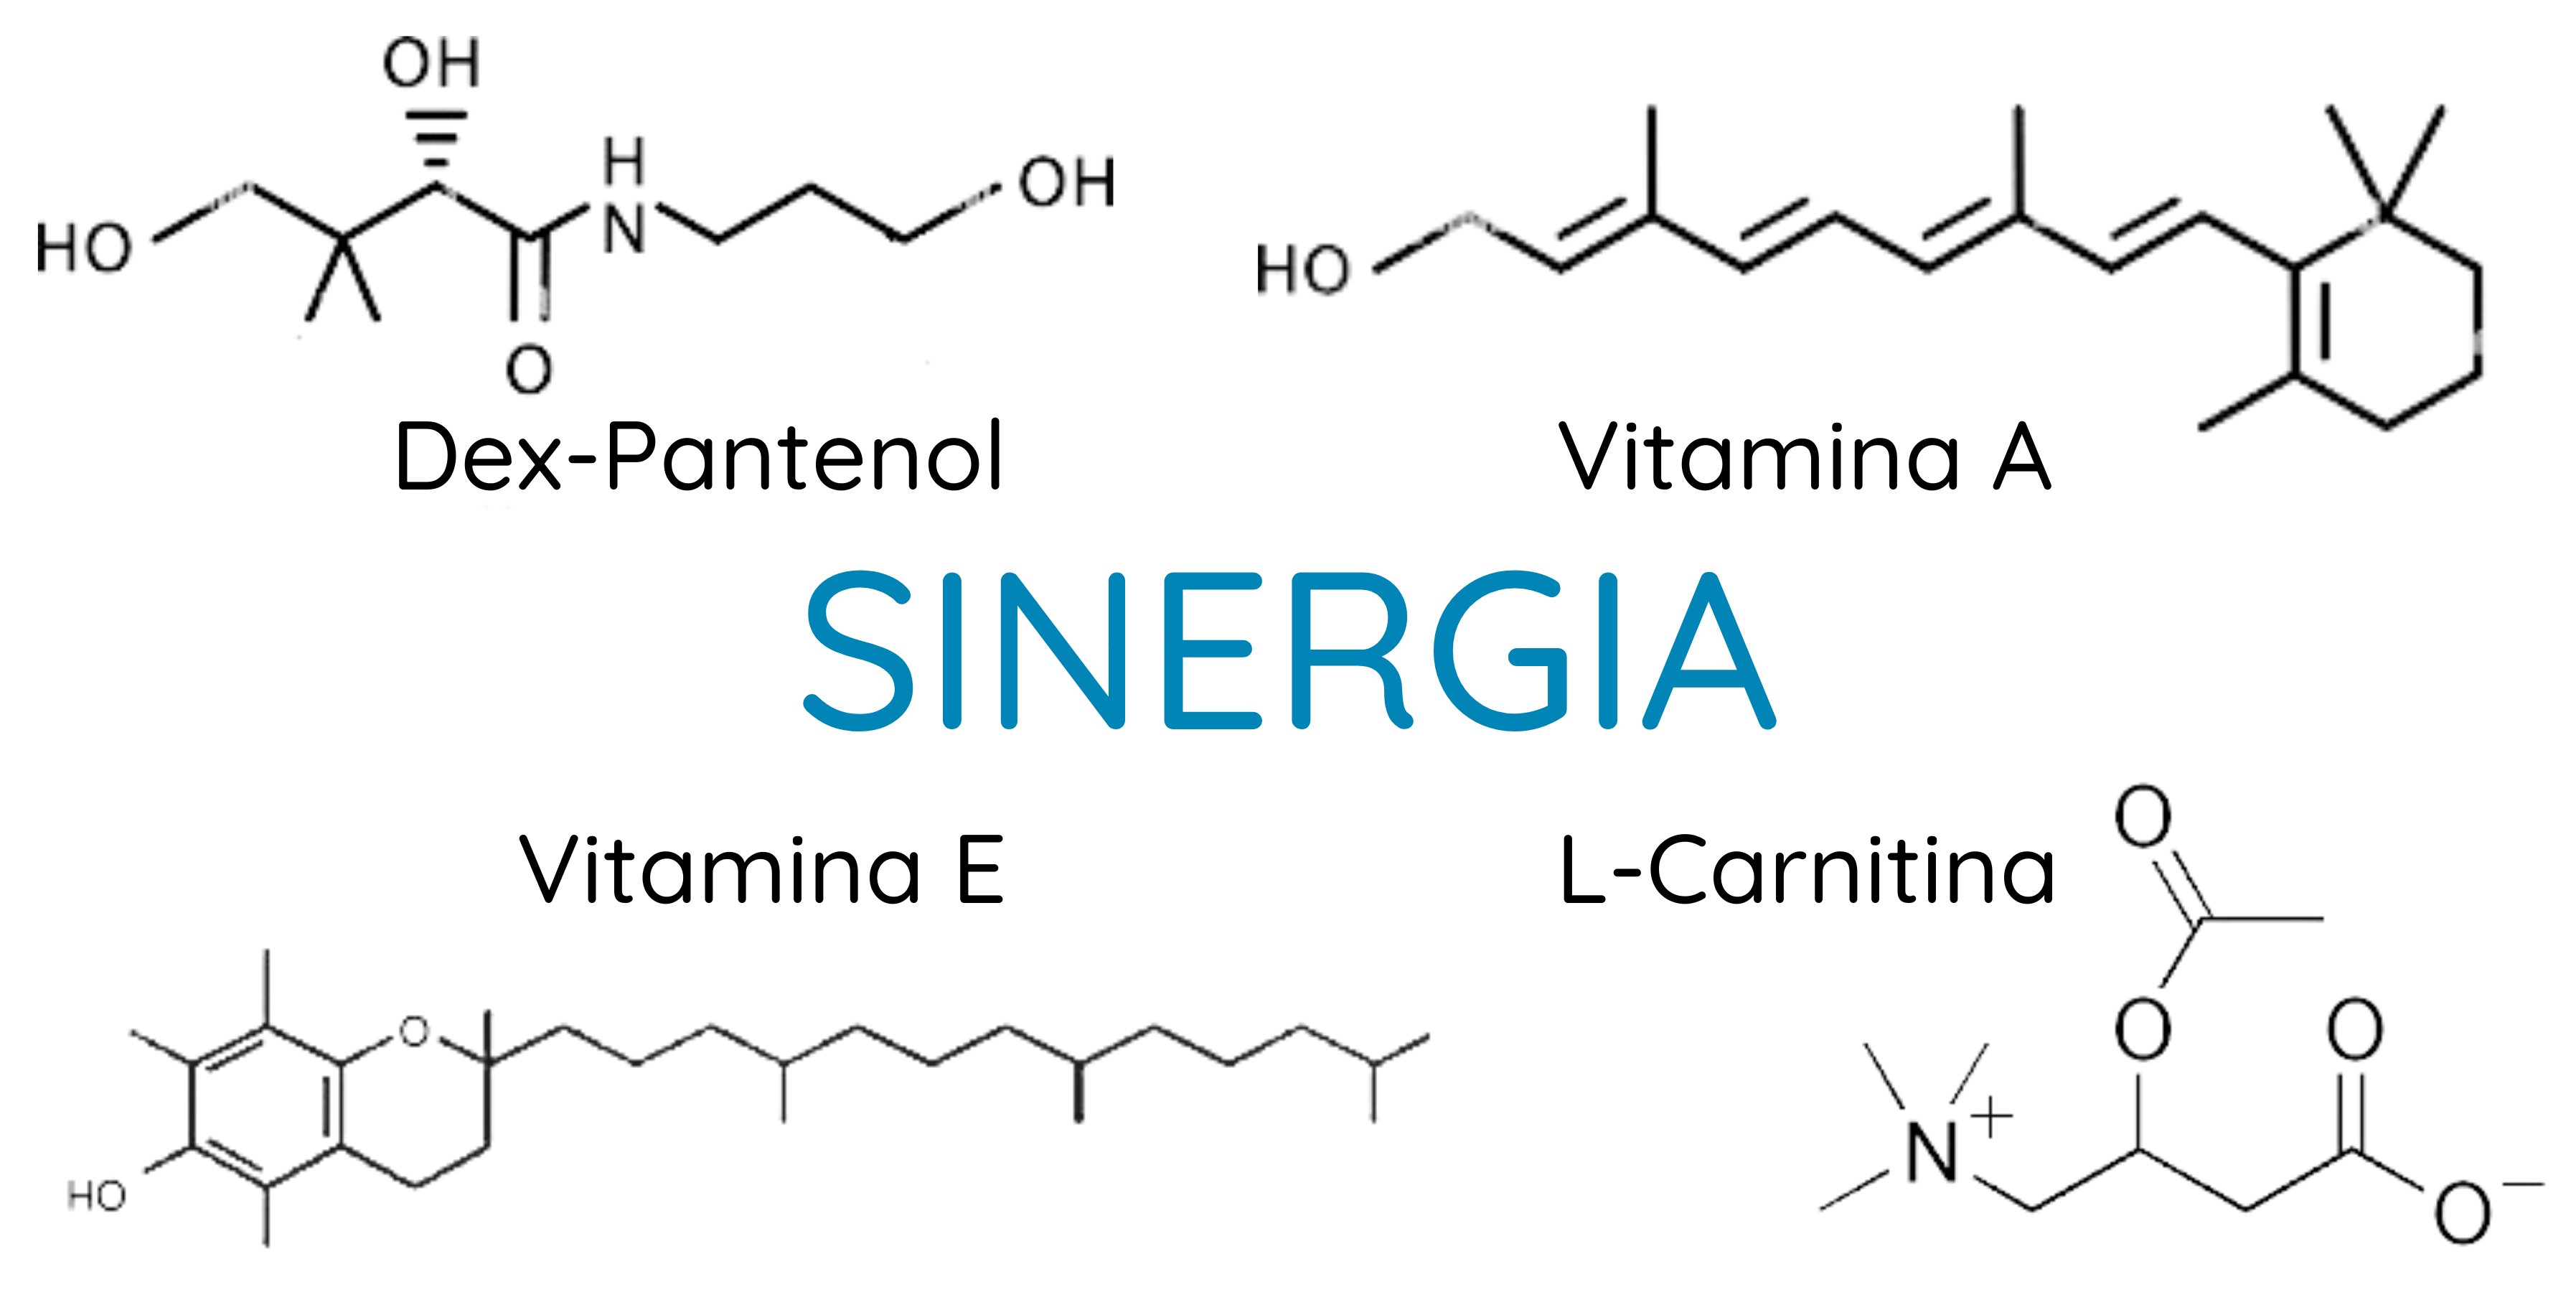 imagen de las moléculas: dex-pantenol, retinol, tocoferol y L-carnitina, 4 moléculas que actúan sinergicamente para regenerar la piel